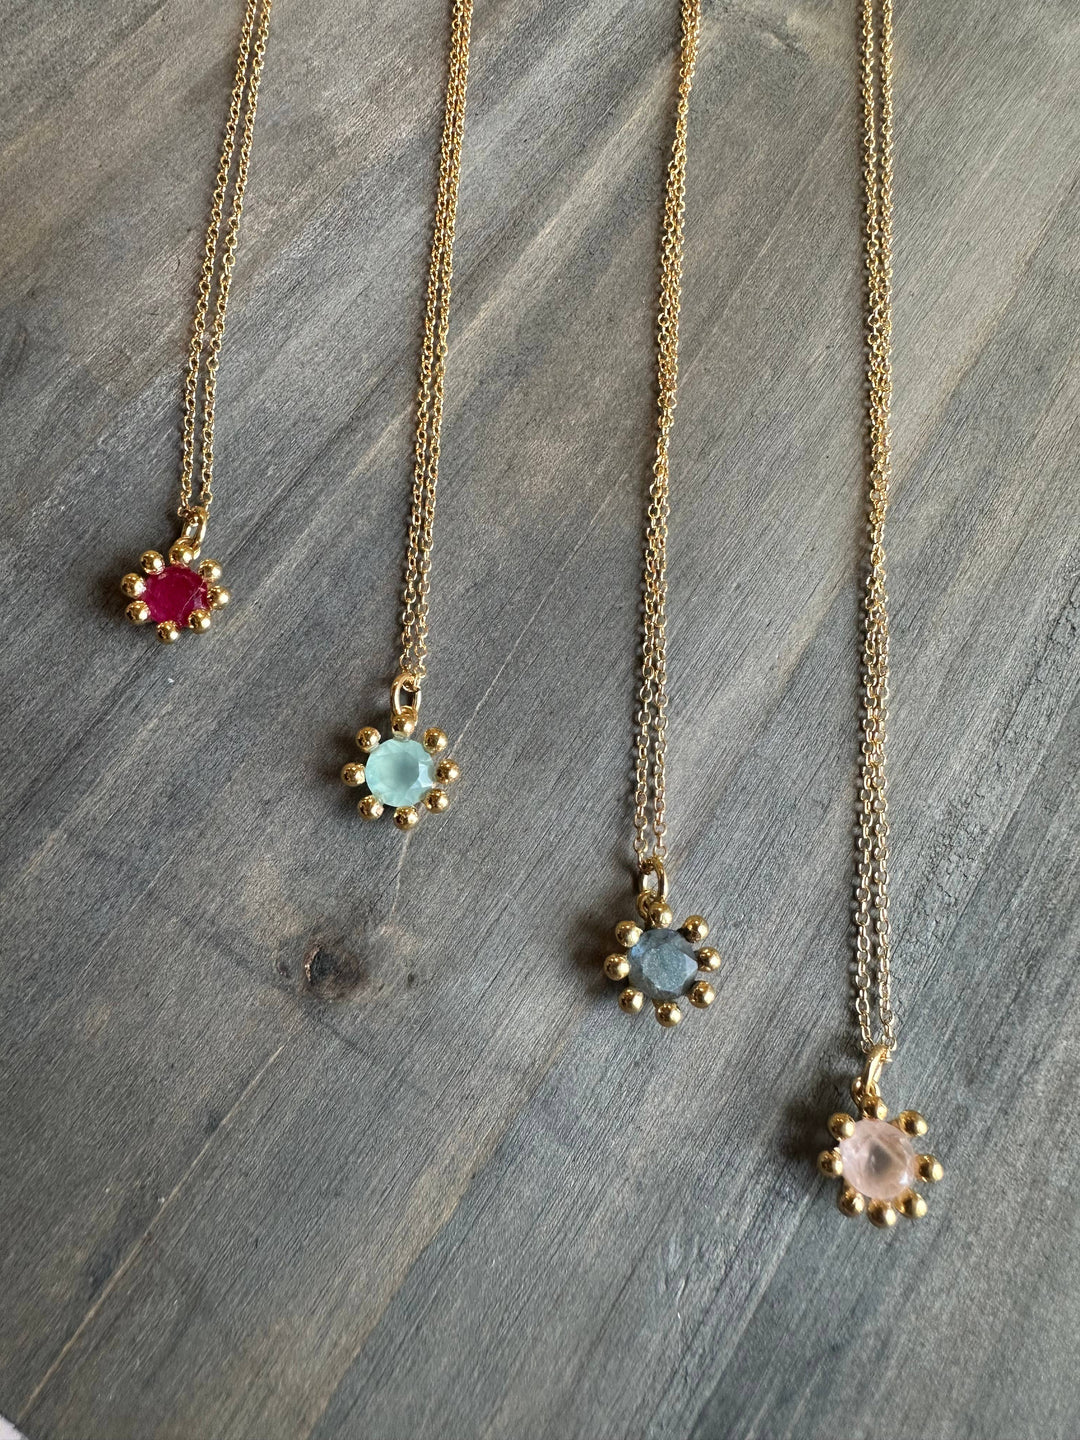 24k Gold Vermeil / Rose Quartz Daisy necklace